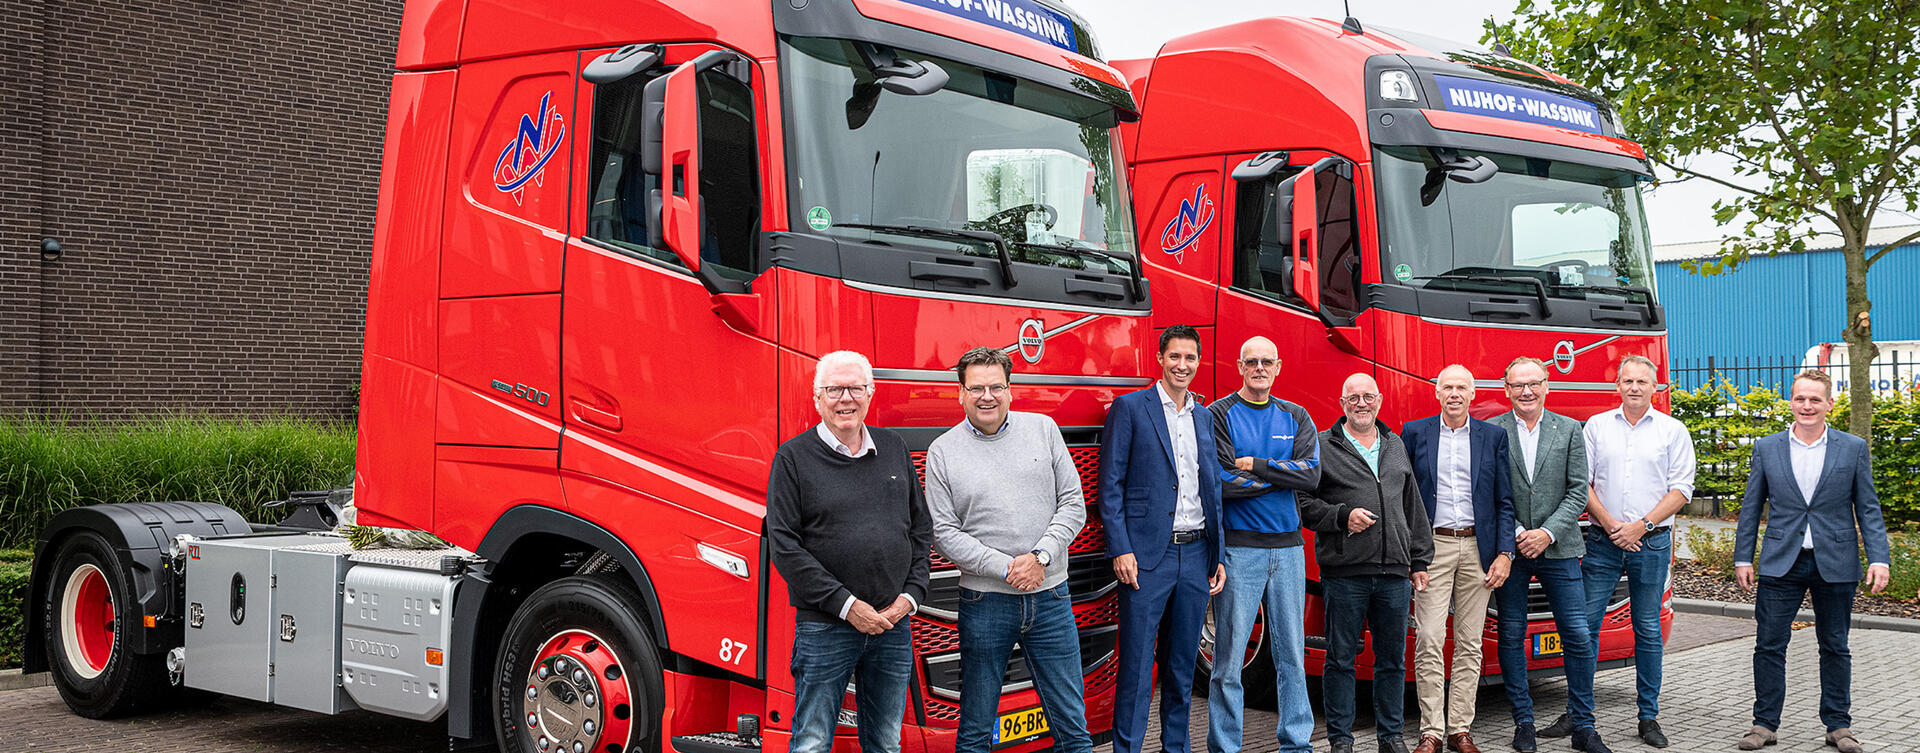 Bijzondere Volvo Trucks aflevering bij Nijhof-Wassink